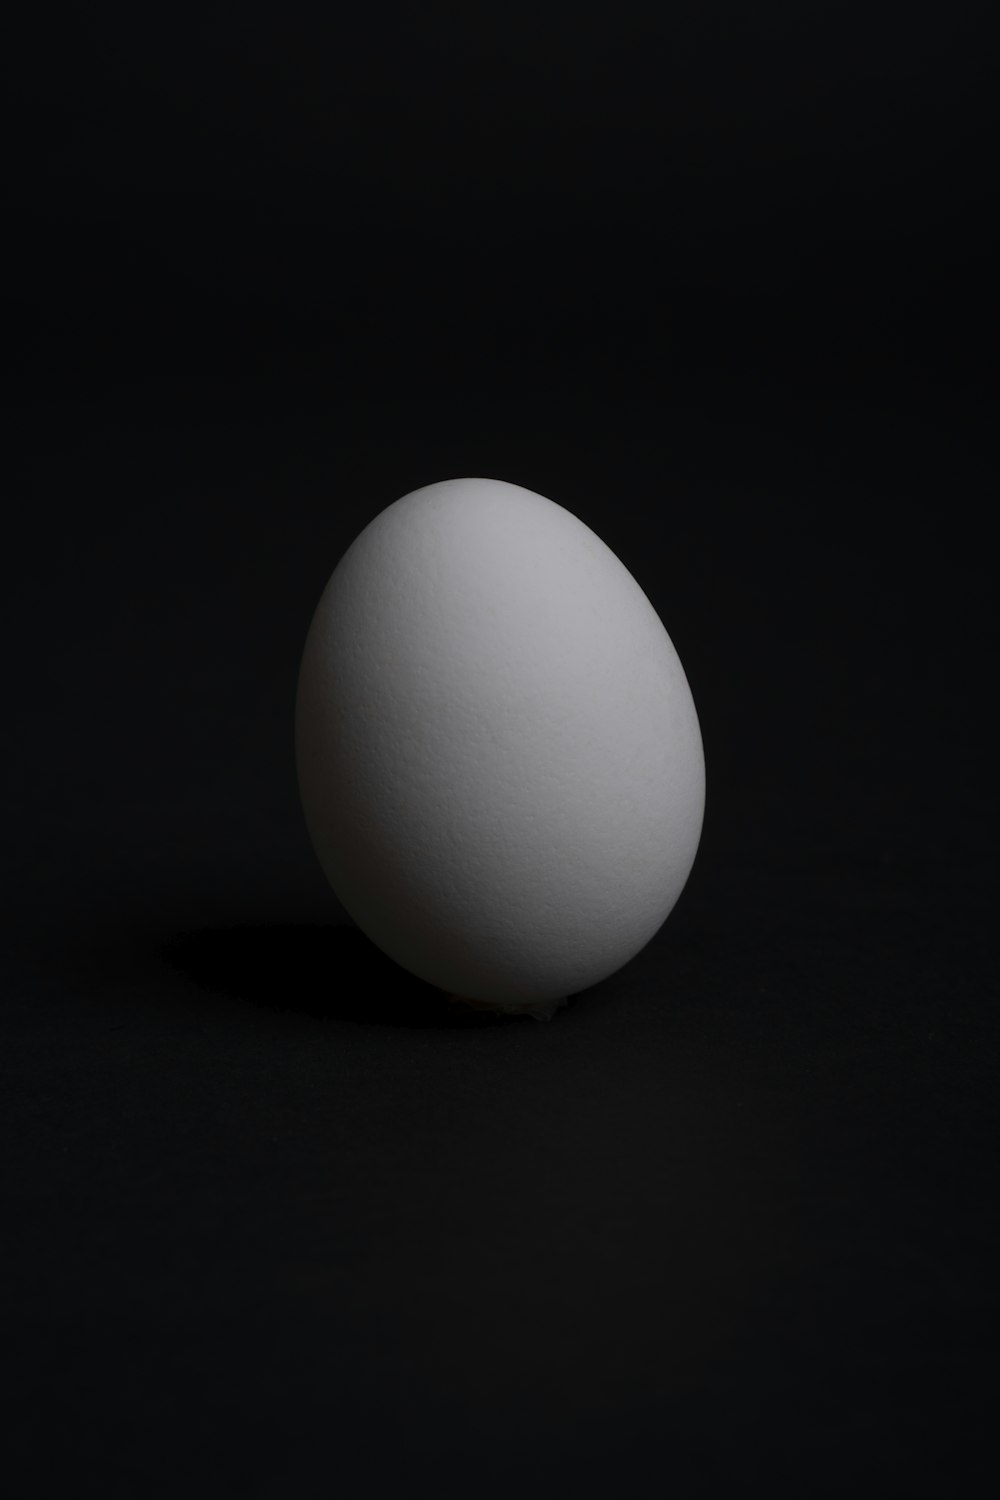 huevo blanco sobre superficie negra